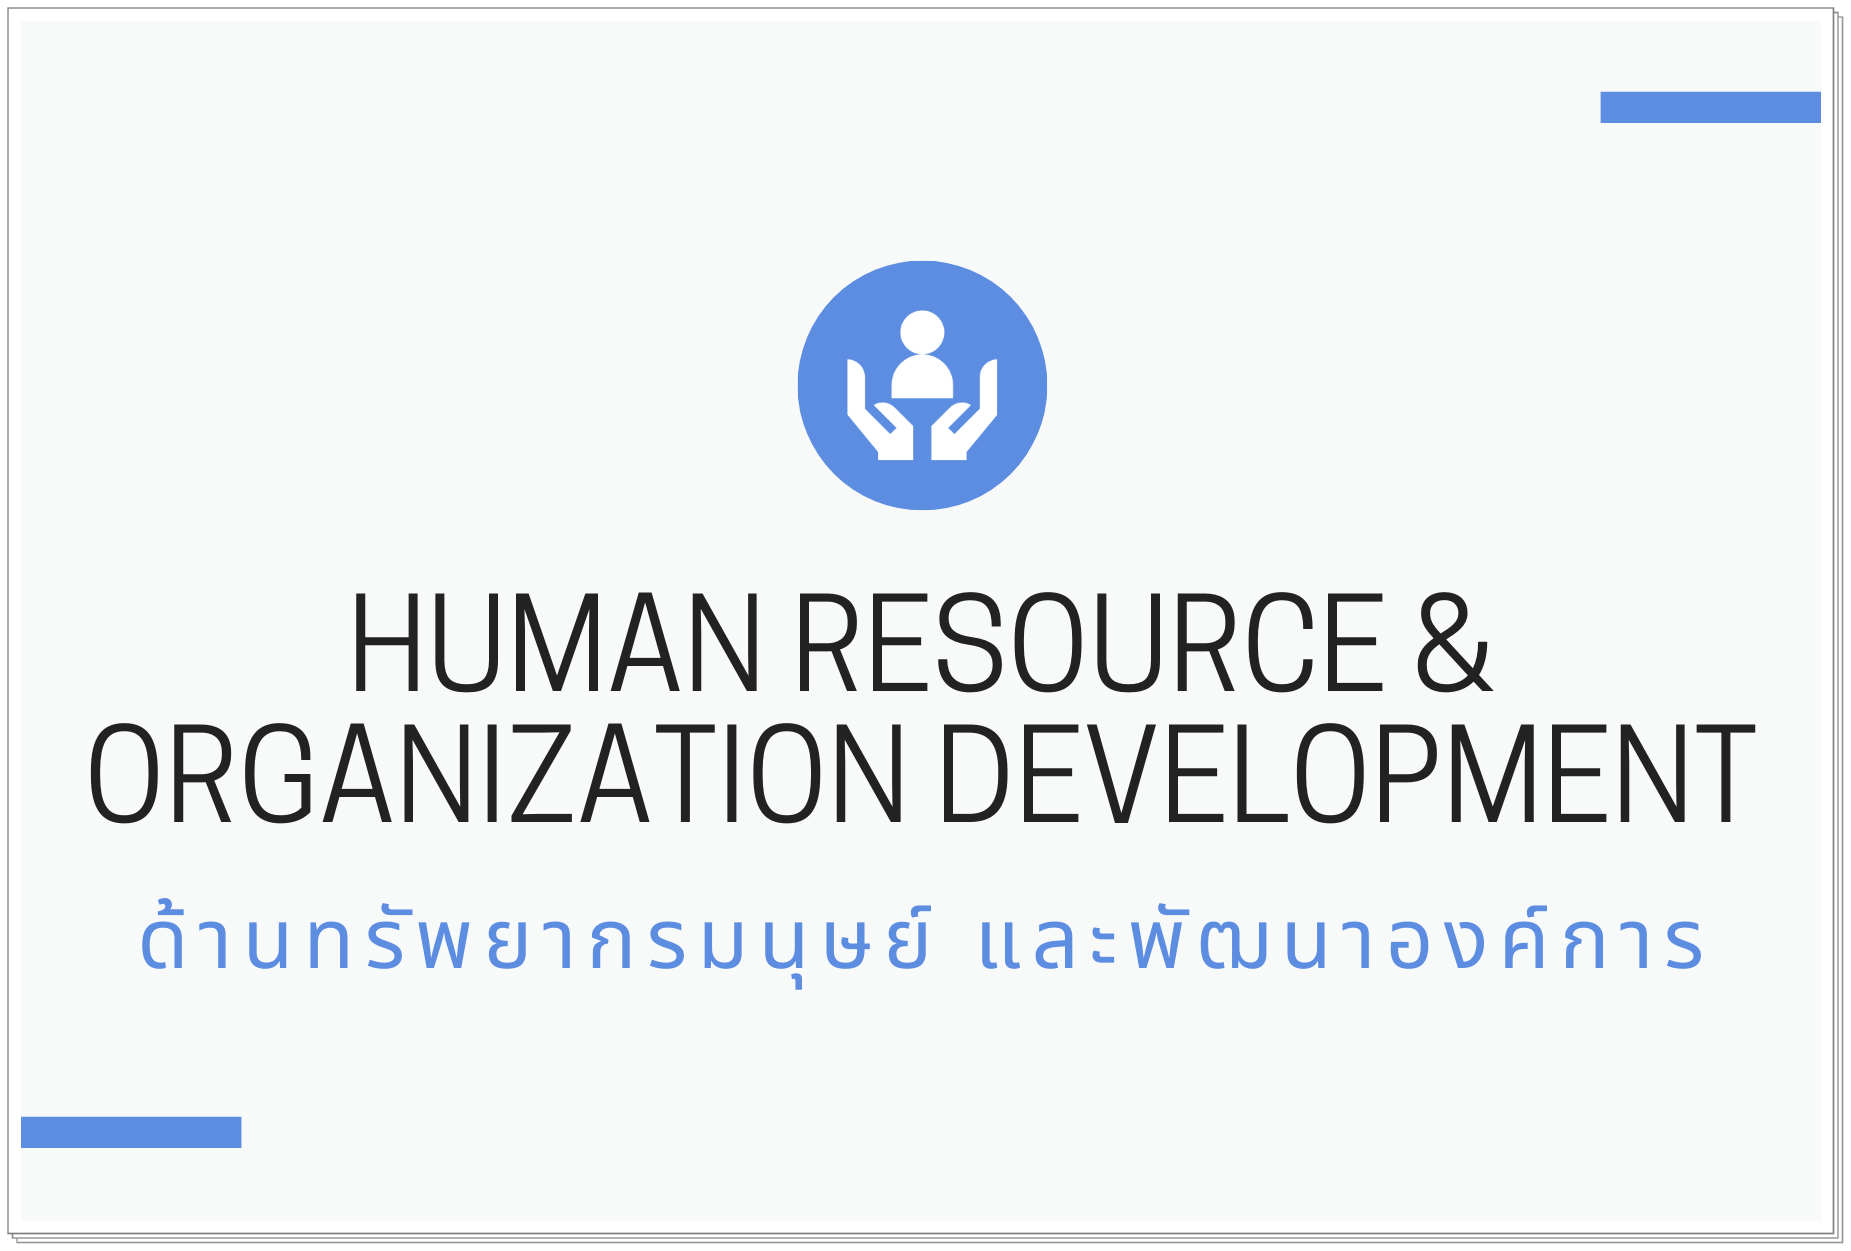 ด้านทรัพยากรมนุษย์ และพัฒนาองค์การ (Human Resource & Organization Development)